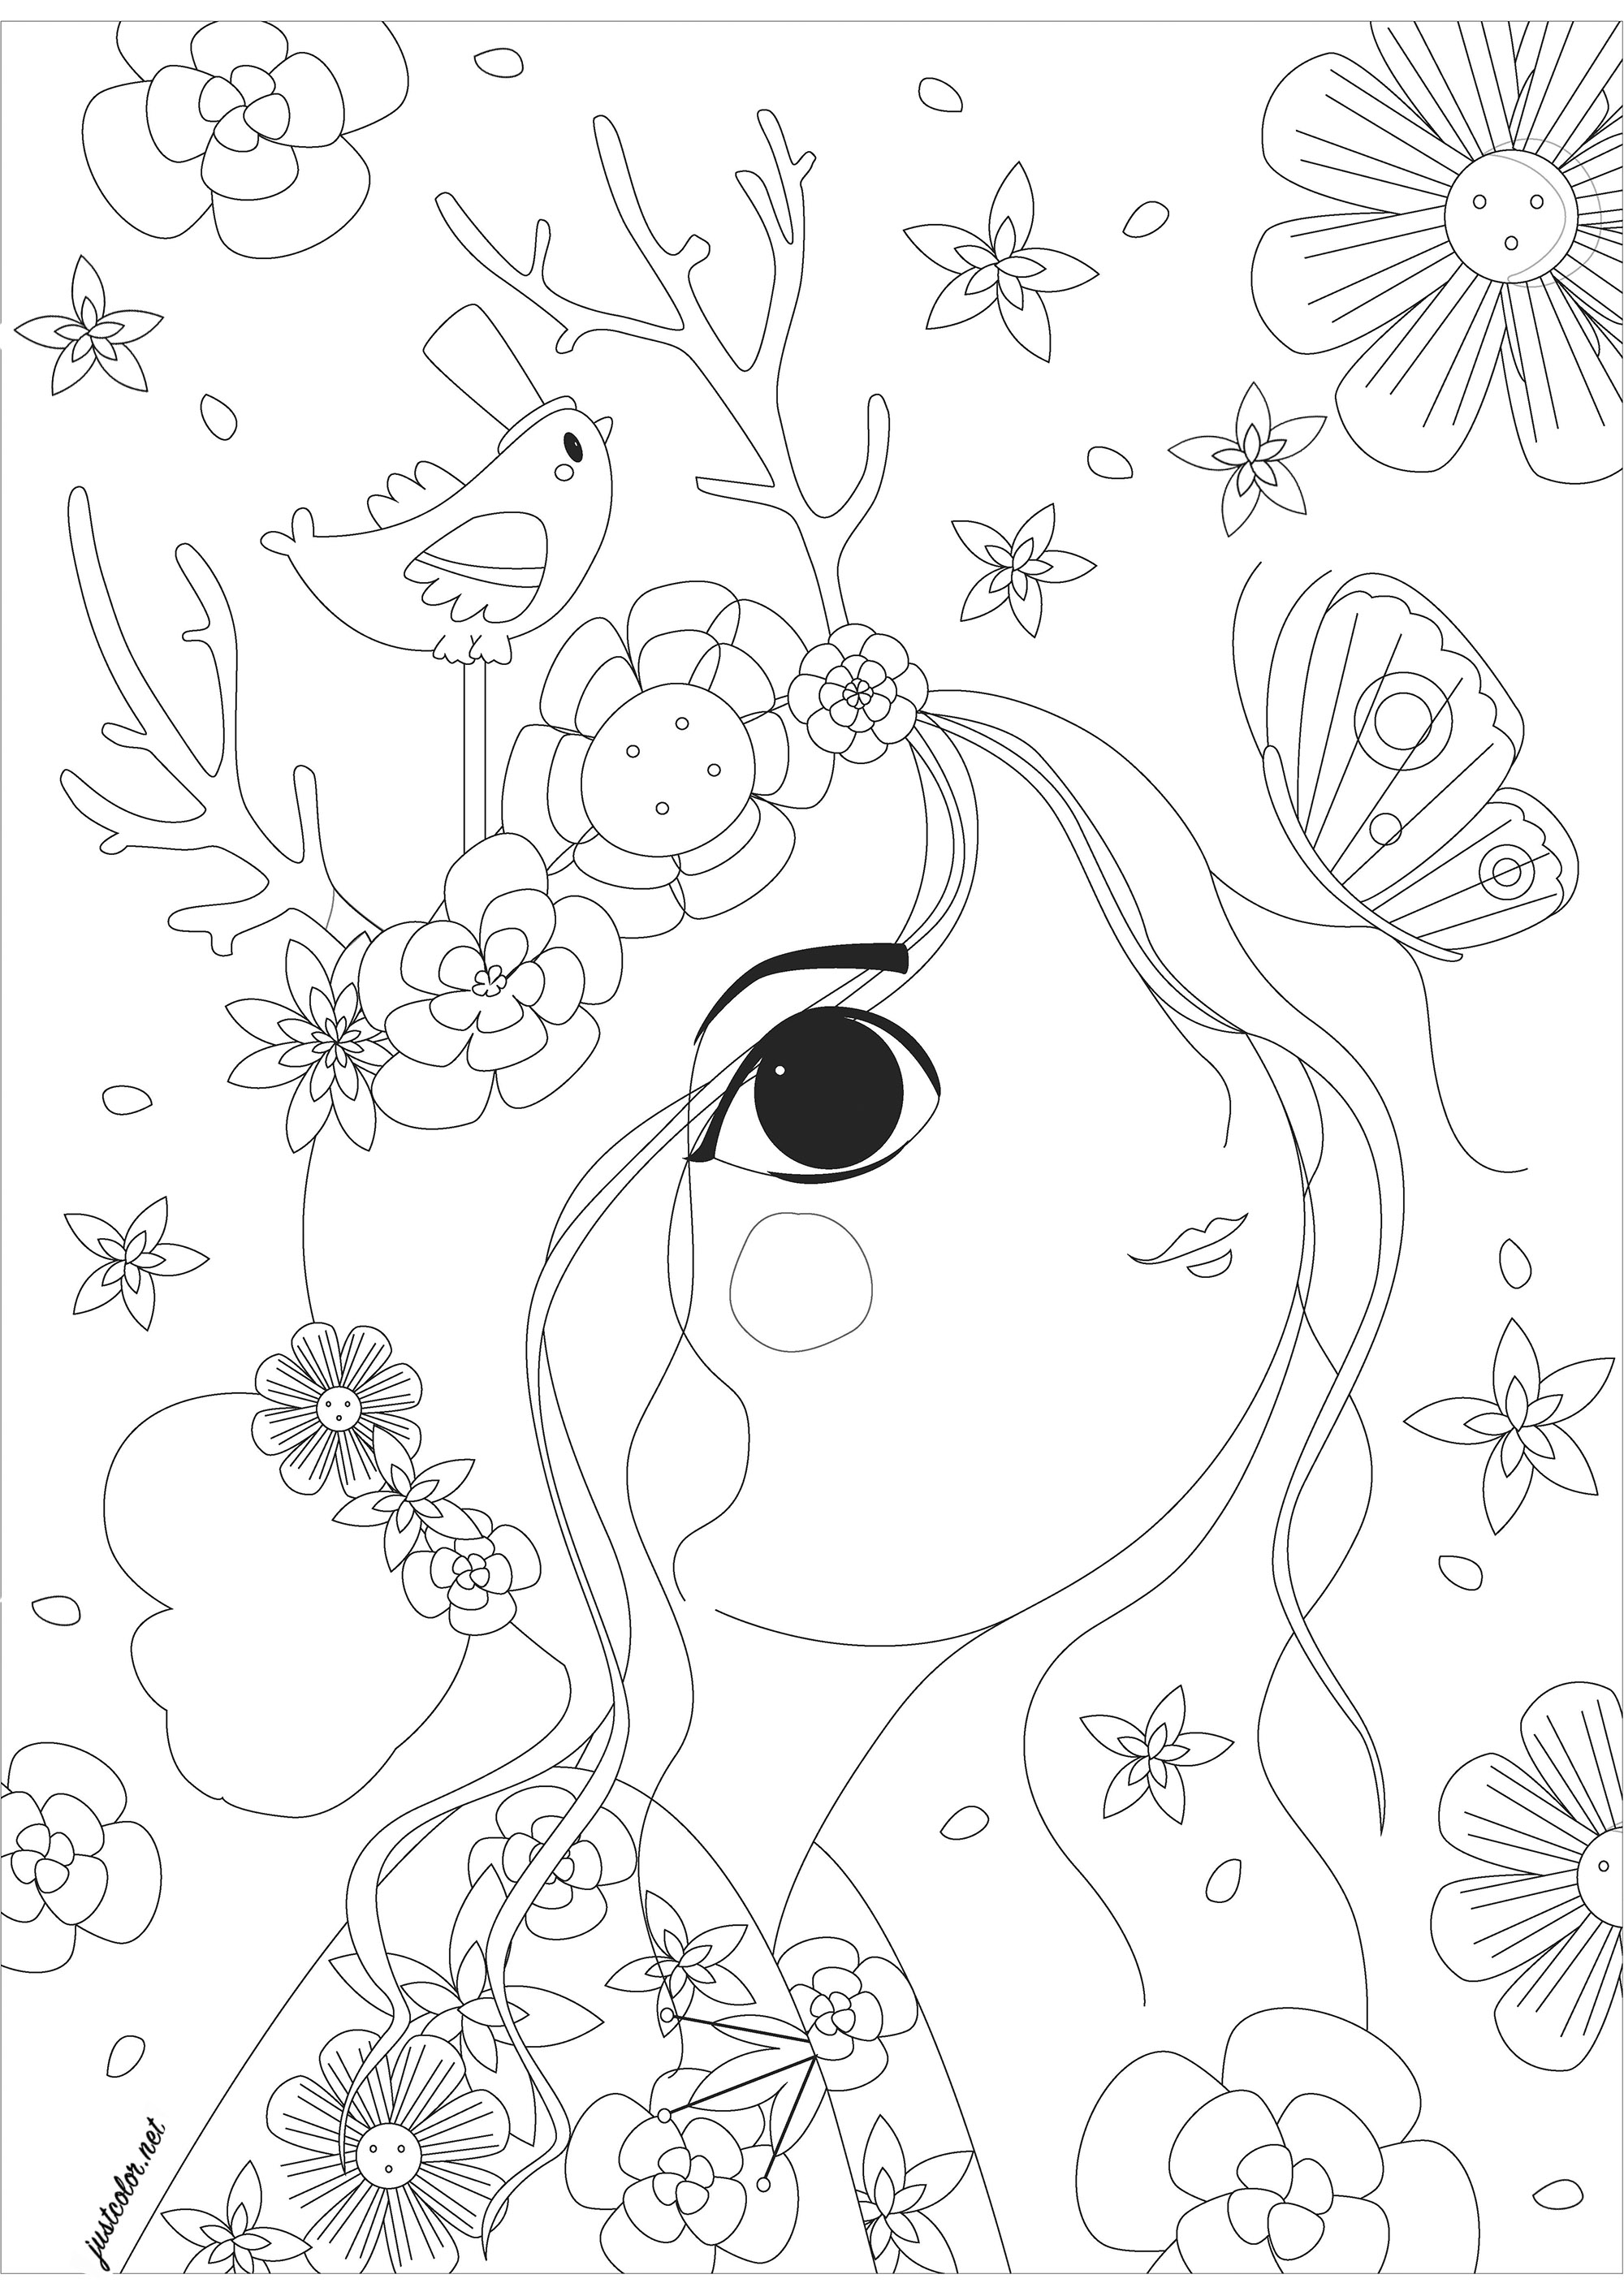 Femme vue de profil regardant un papillon, entourée de fleurs. Un coloriage très apaisant, n'attendant que de belles couleurs pour toutes ces fleurs, ce papillon, ce joli petit oiseau et ce personnage féminin dessiné avec un style unique.